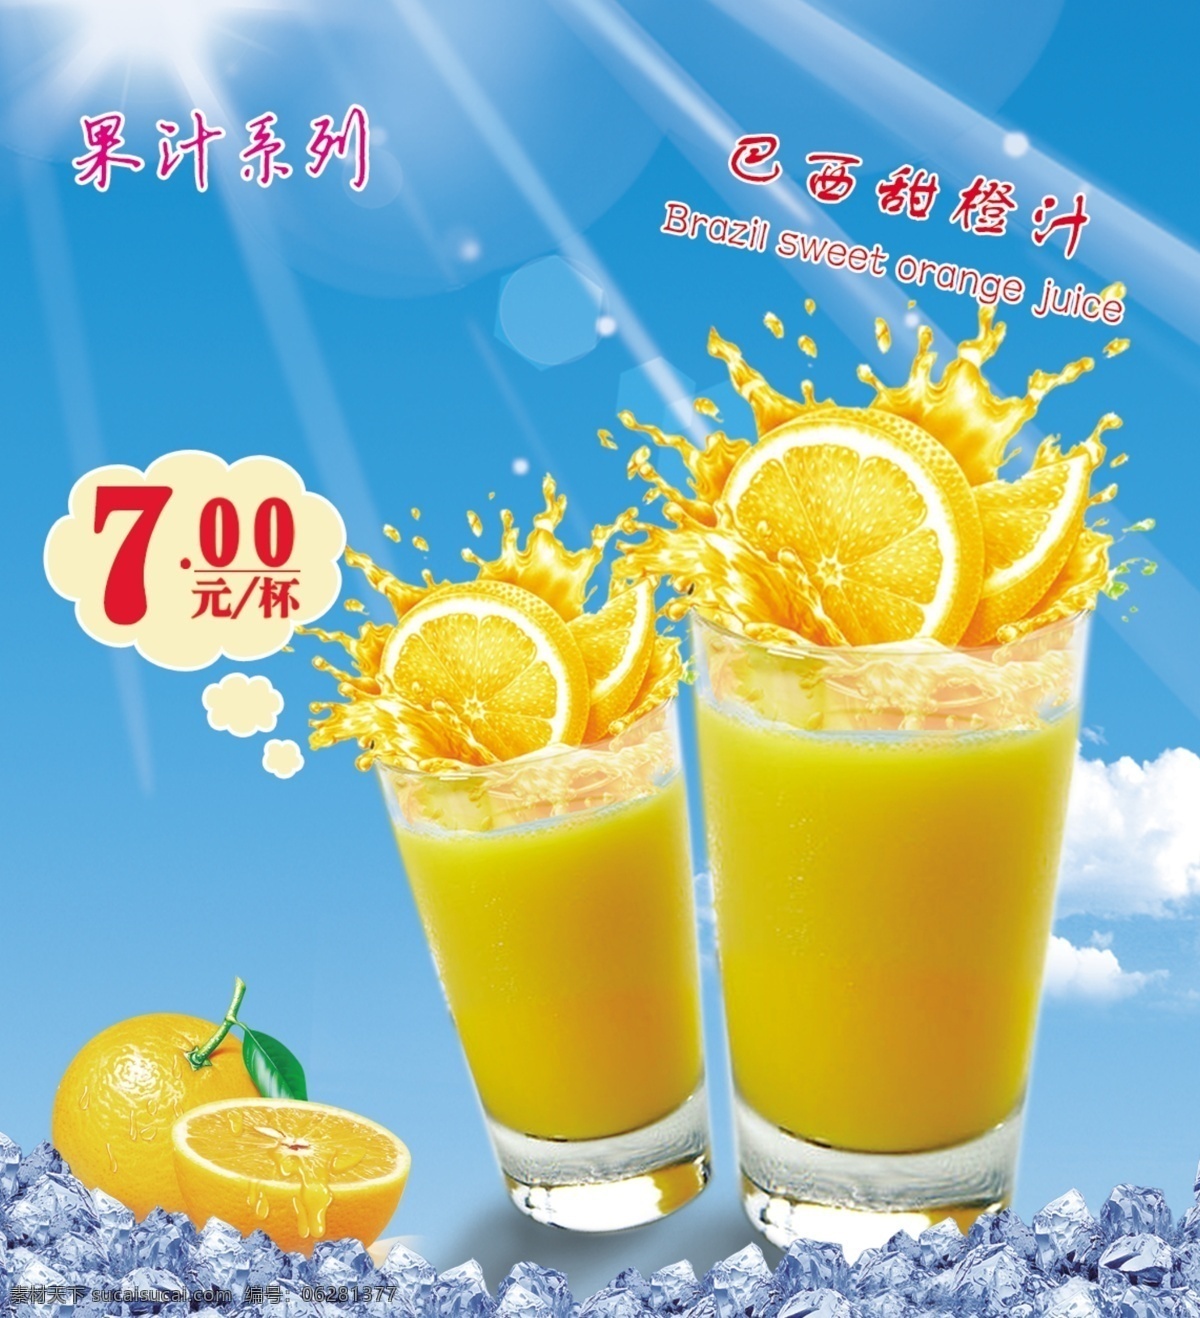 巴西甜橙汁 饮料 甜橙汁 橙汁灯箱 奶茶店